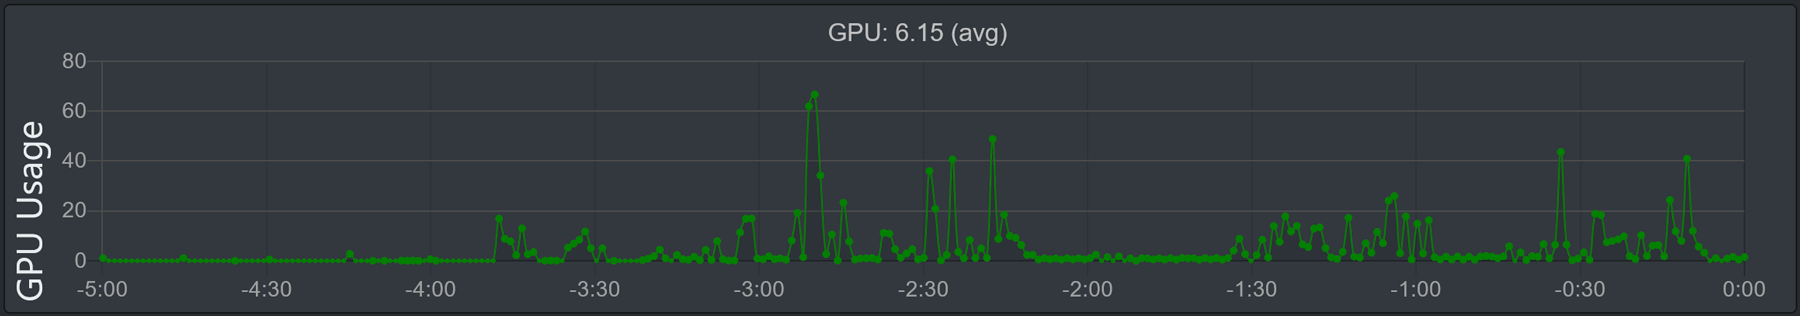 Immagine del grafico 'Utilizzo della GPU'